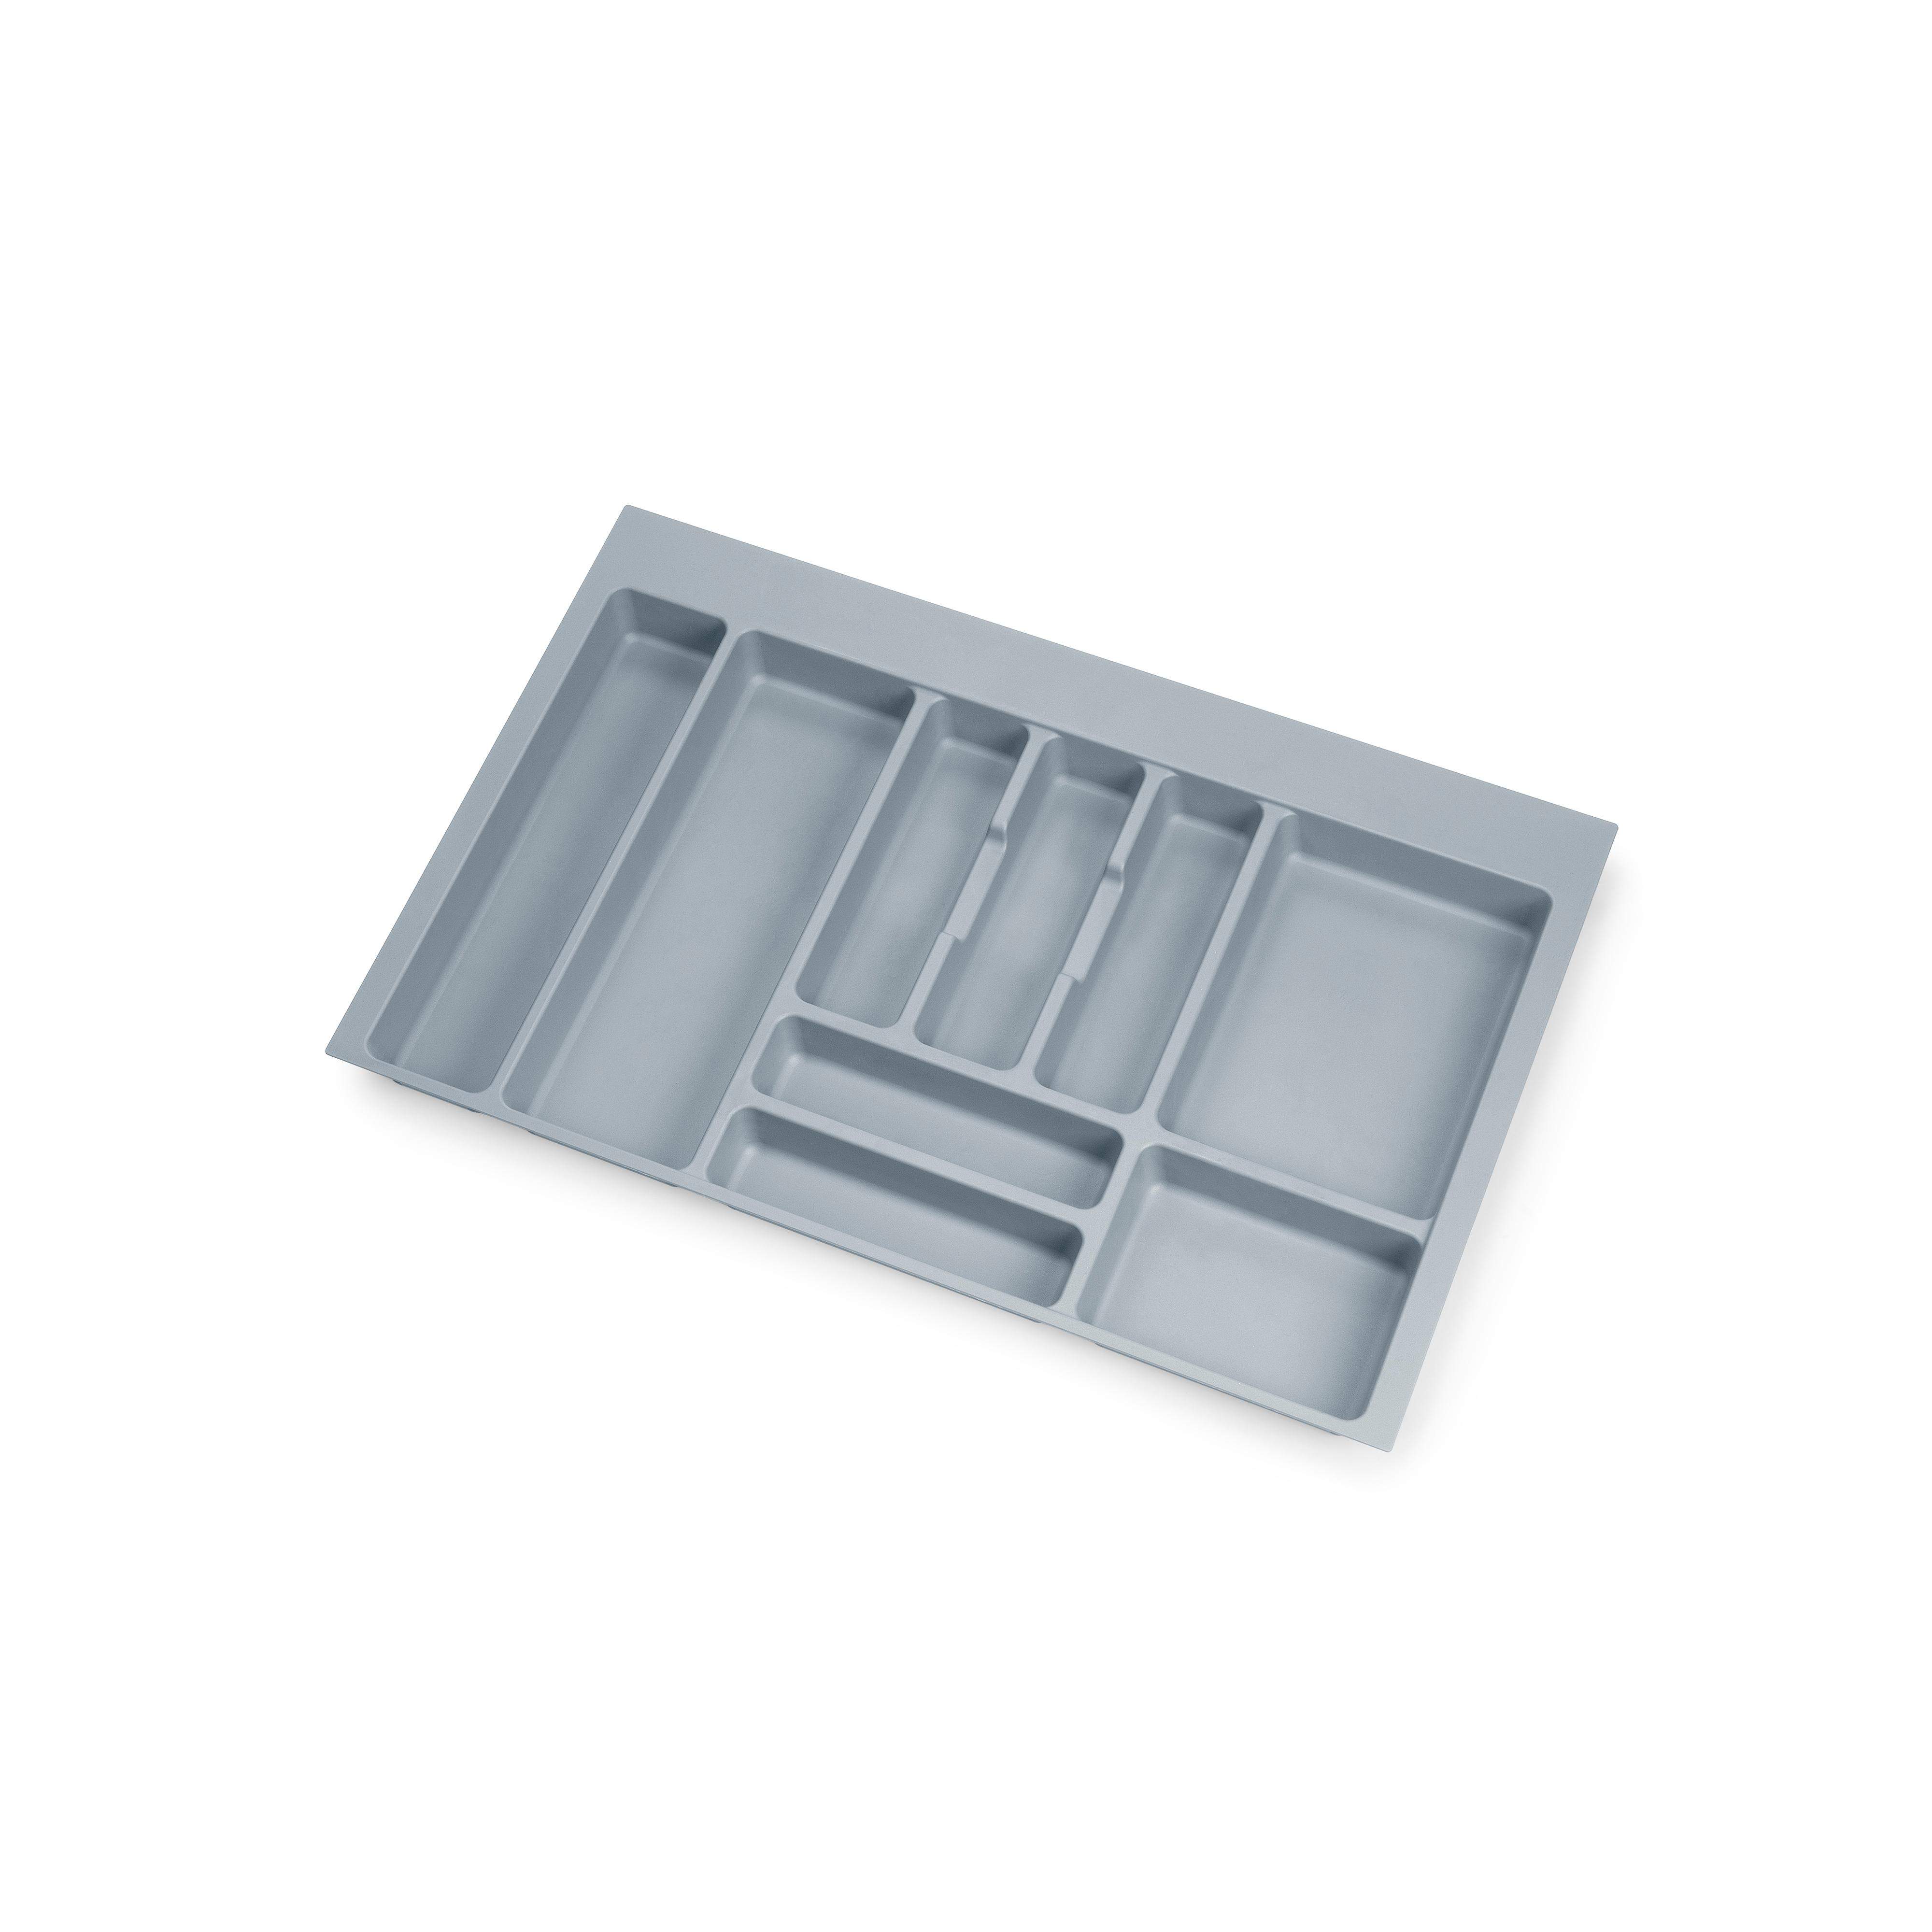 Range couverts pour tiroirs de cuisine, pour meuble 800 mm, plastique gris